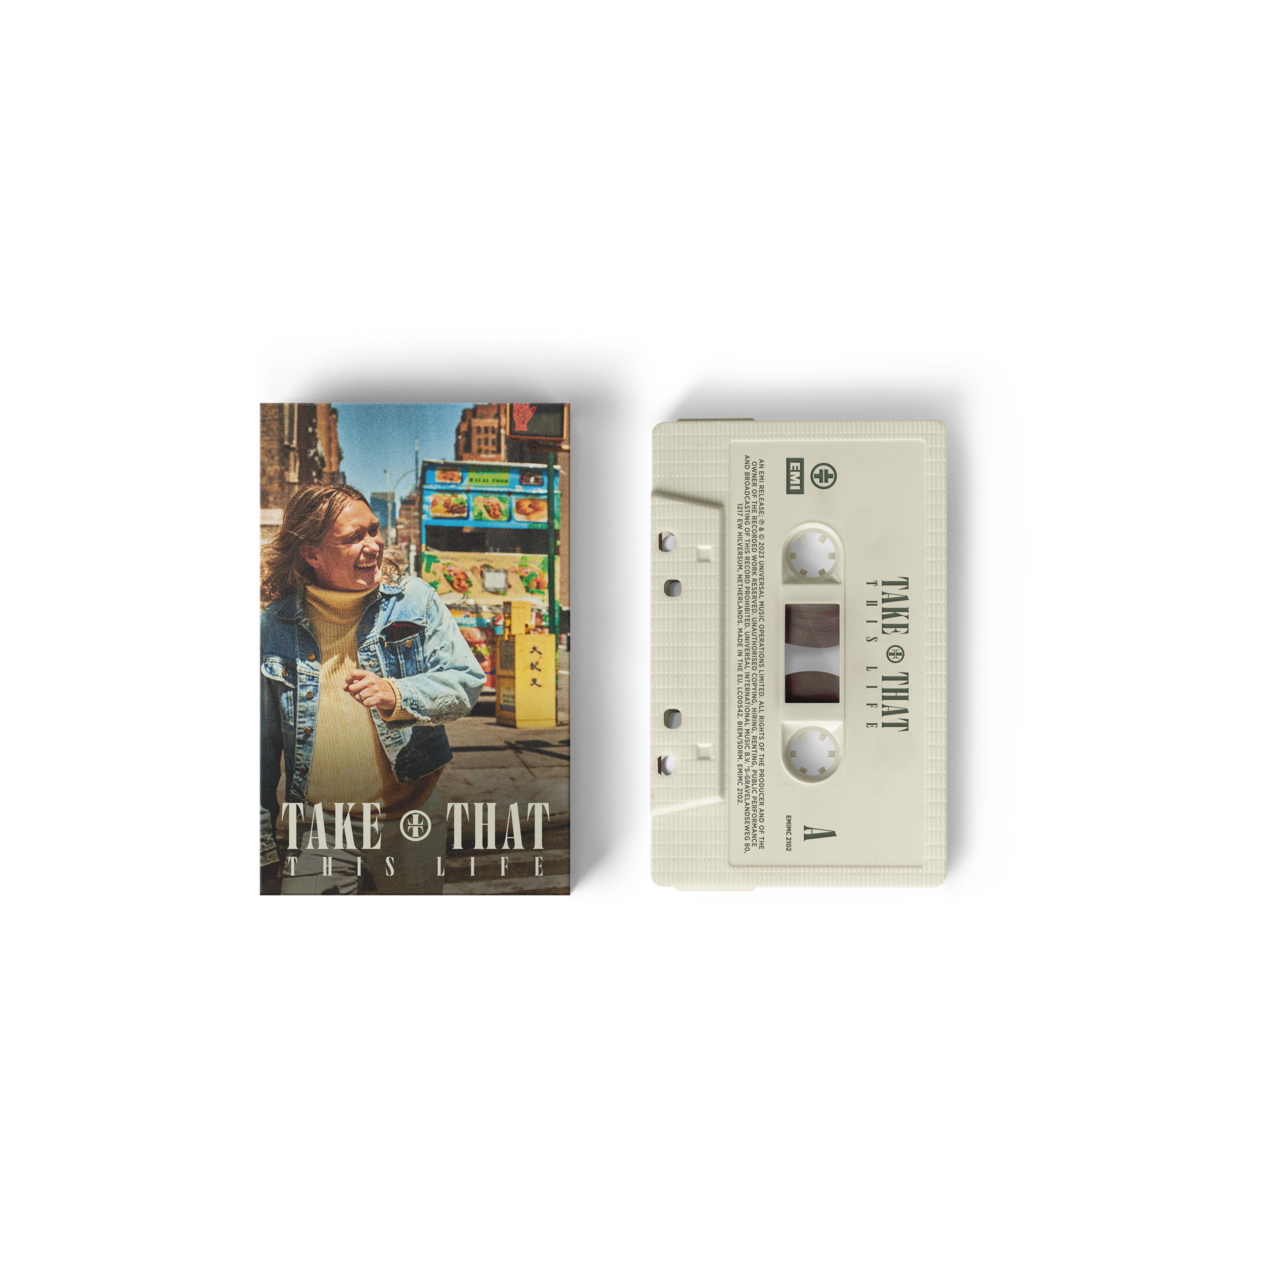 This Life: Cassette Bundle